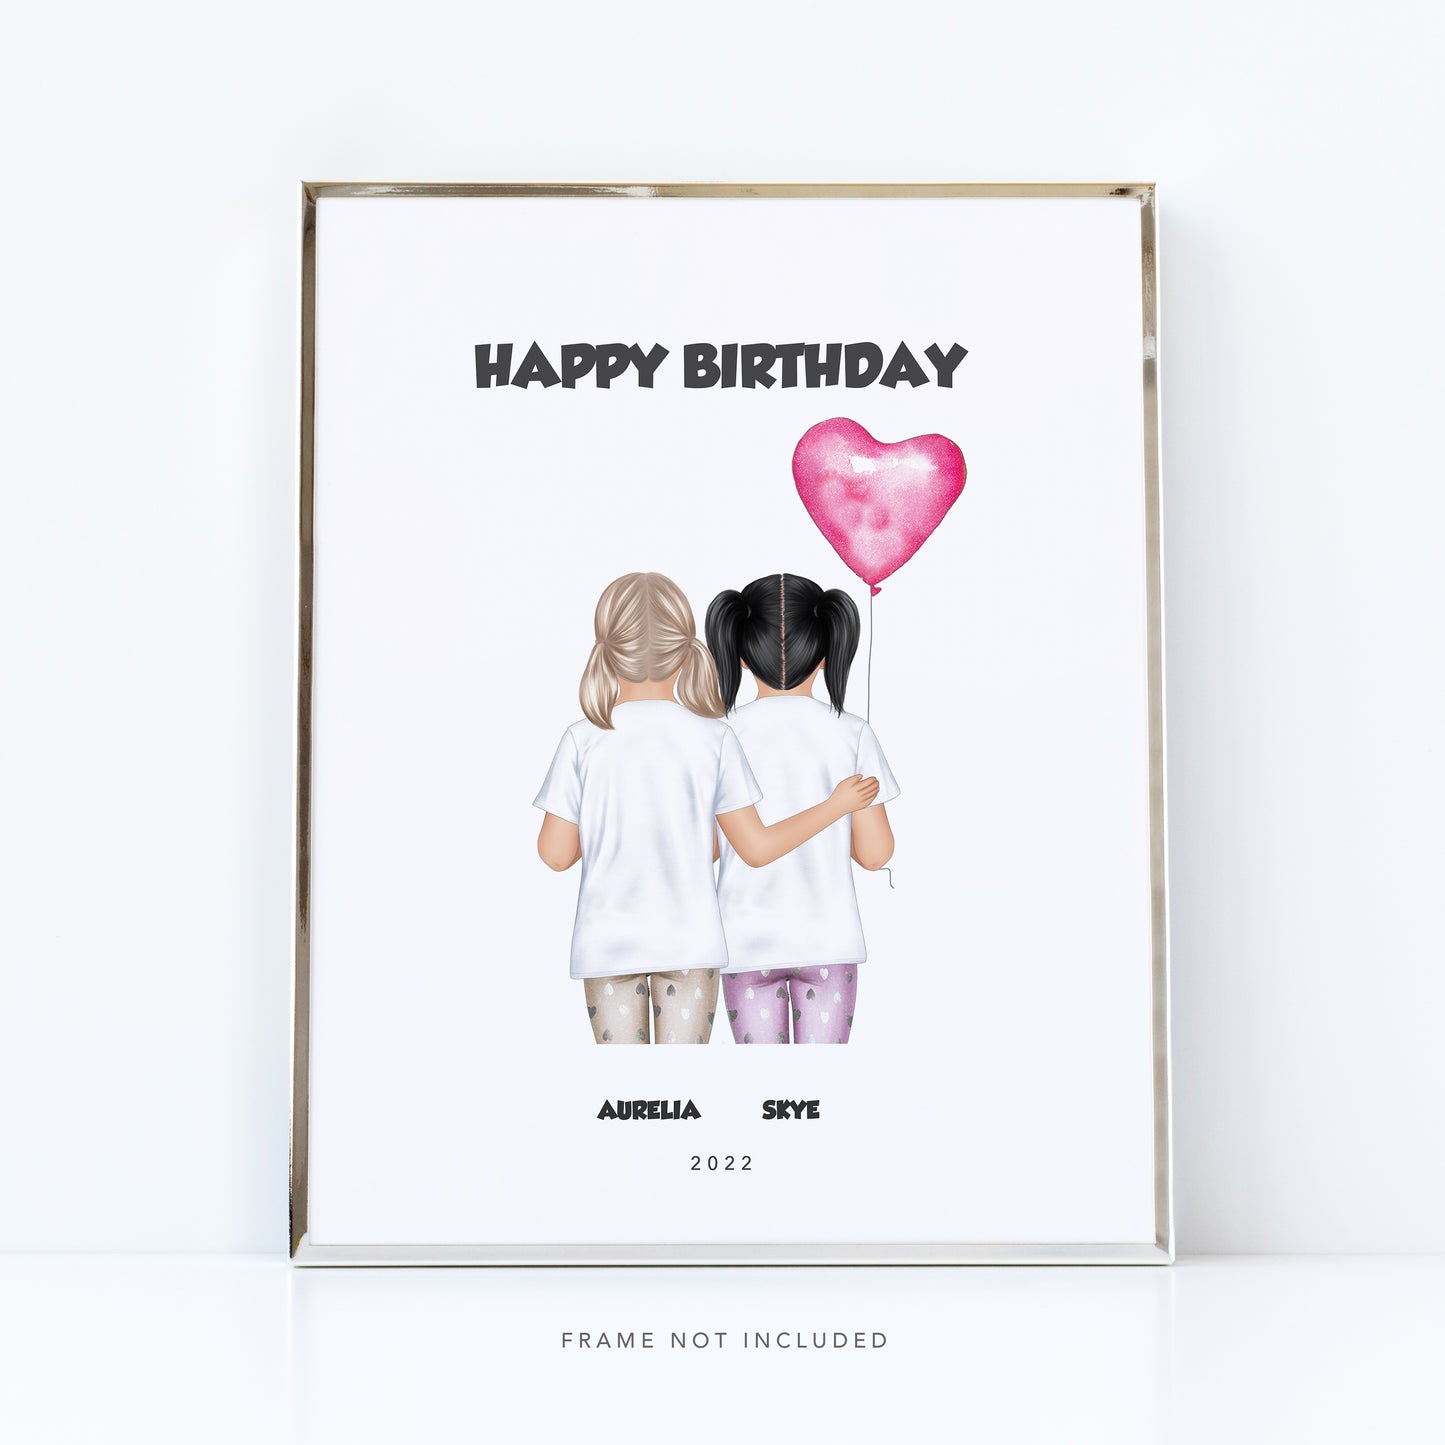 Forever friends print | Group gift for children